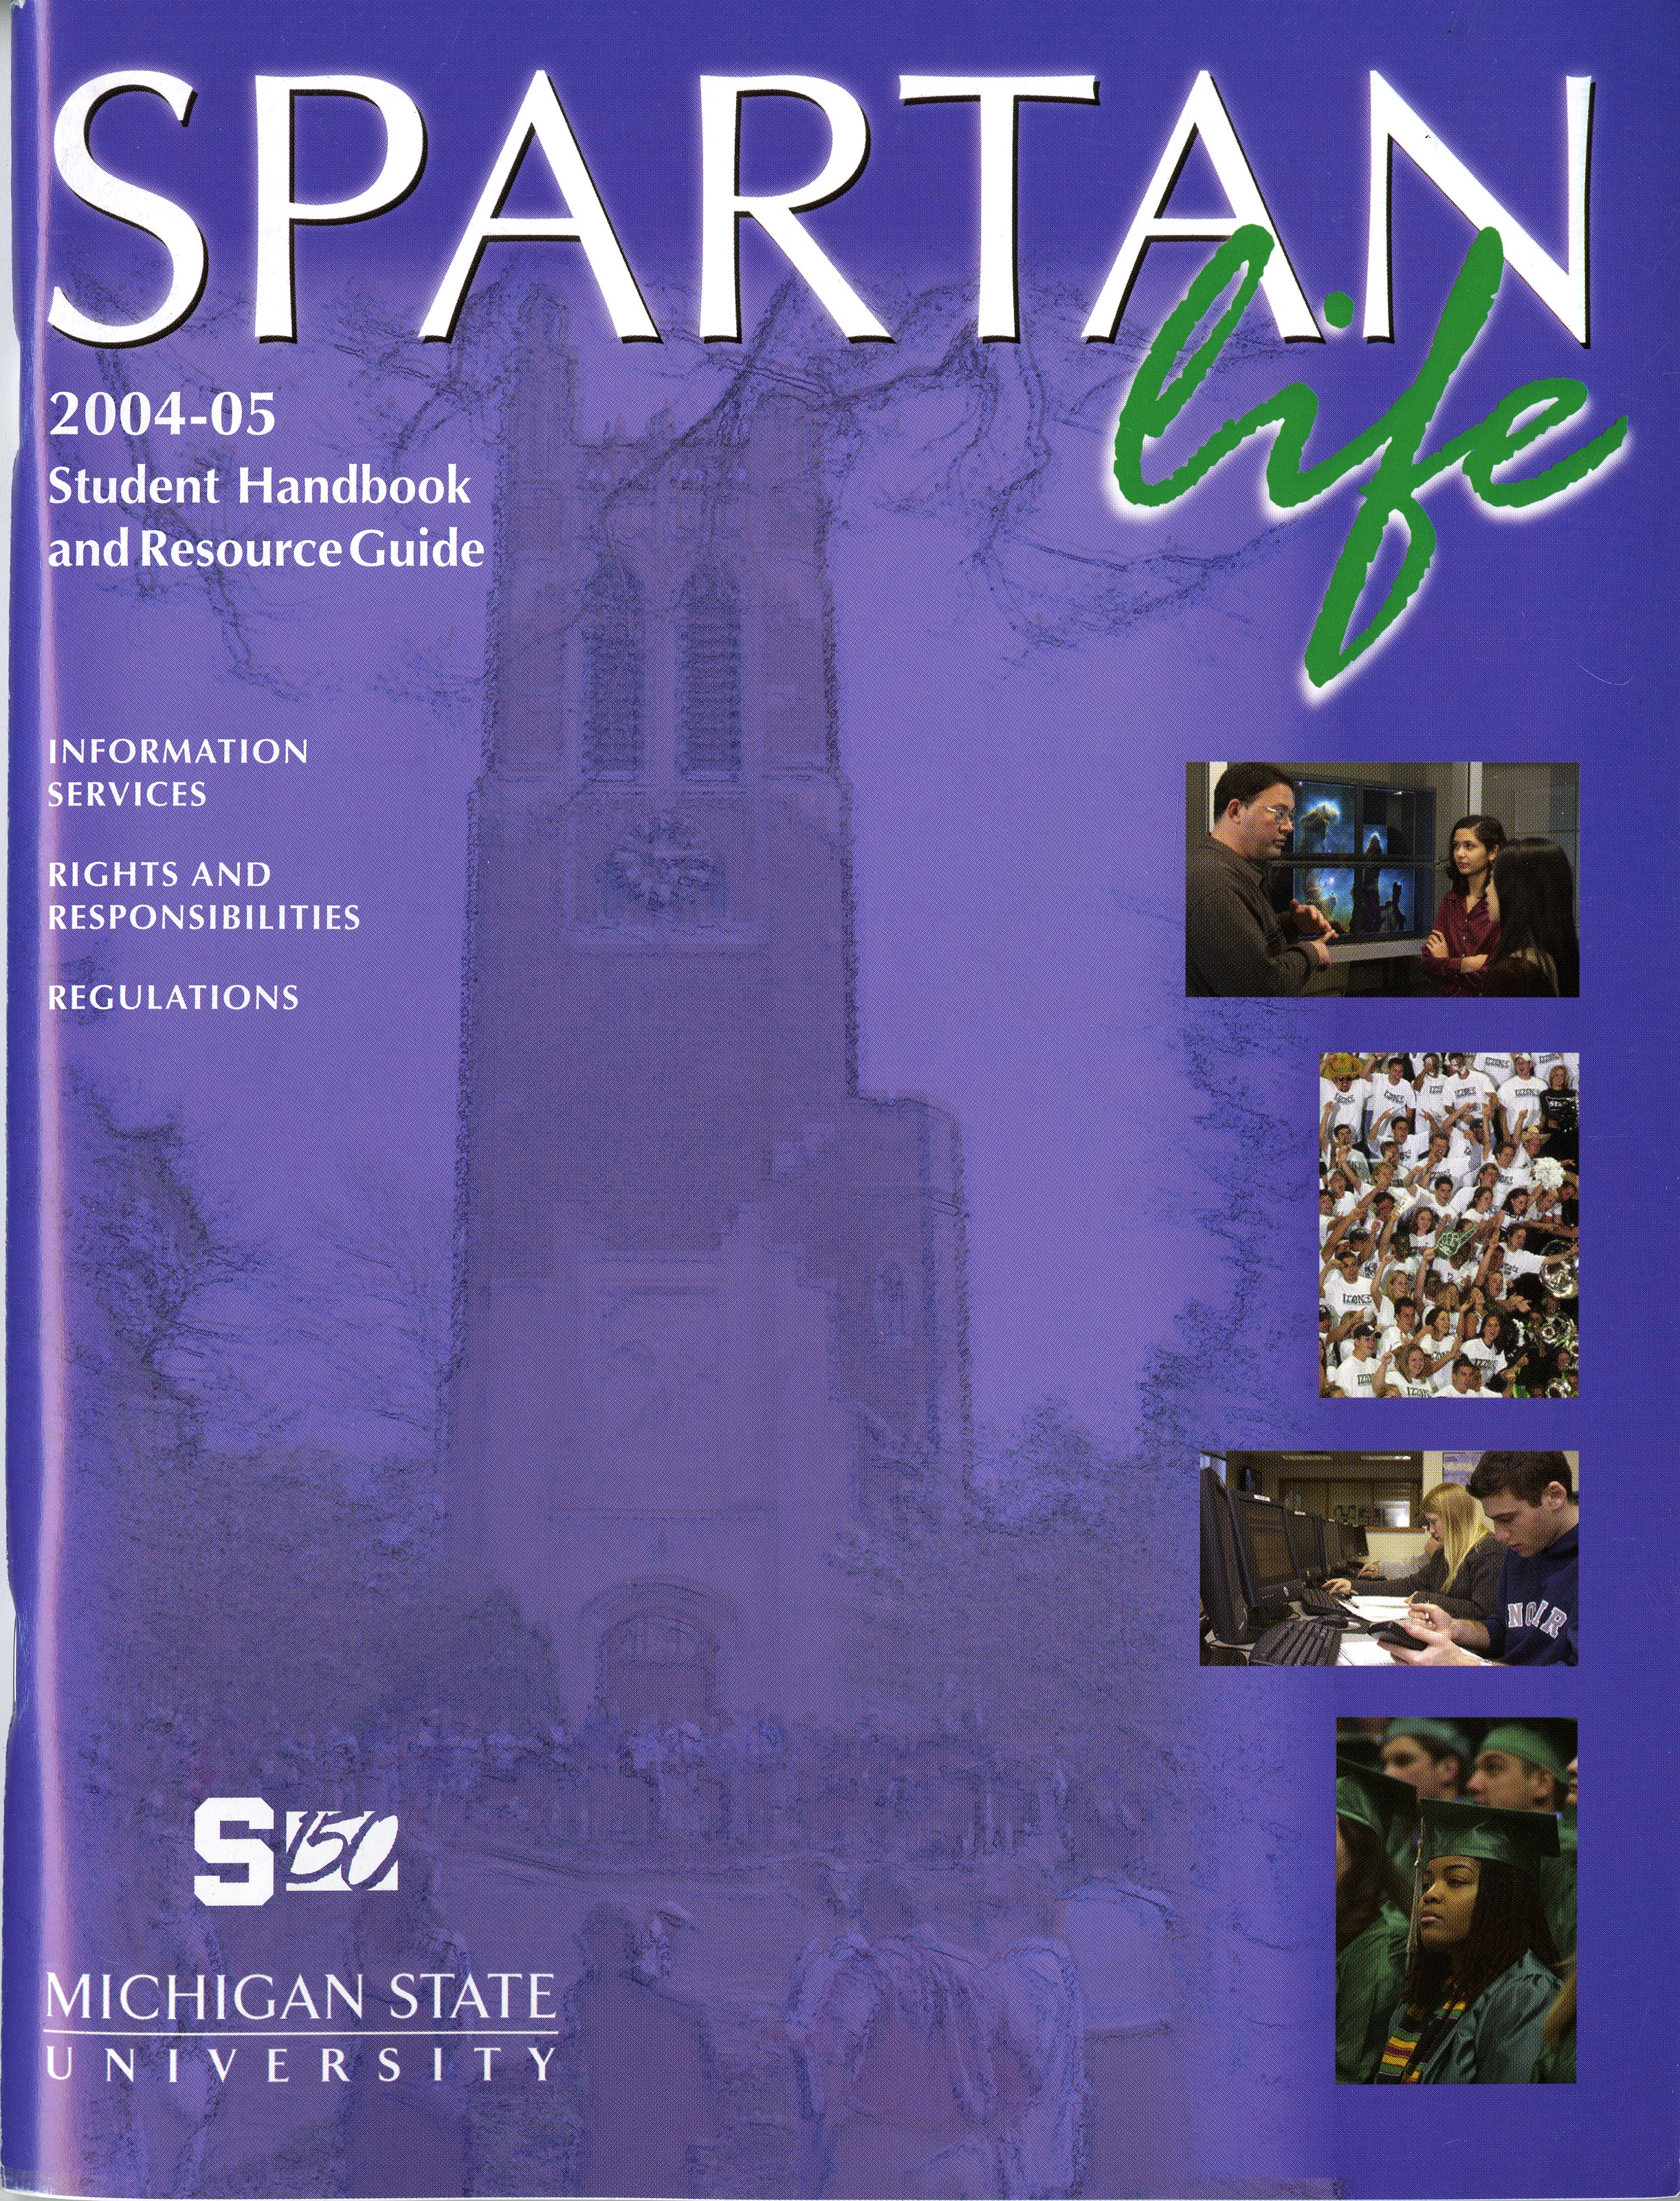 Student Handbook, 2004-2005